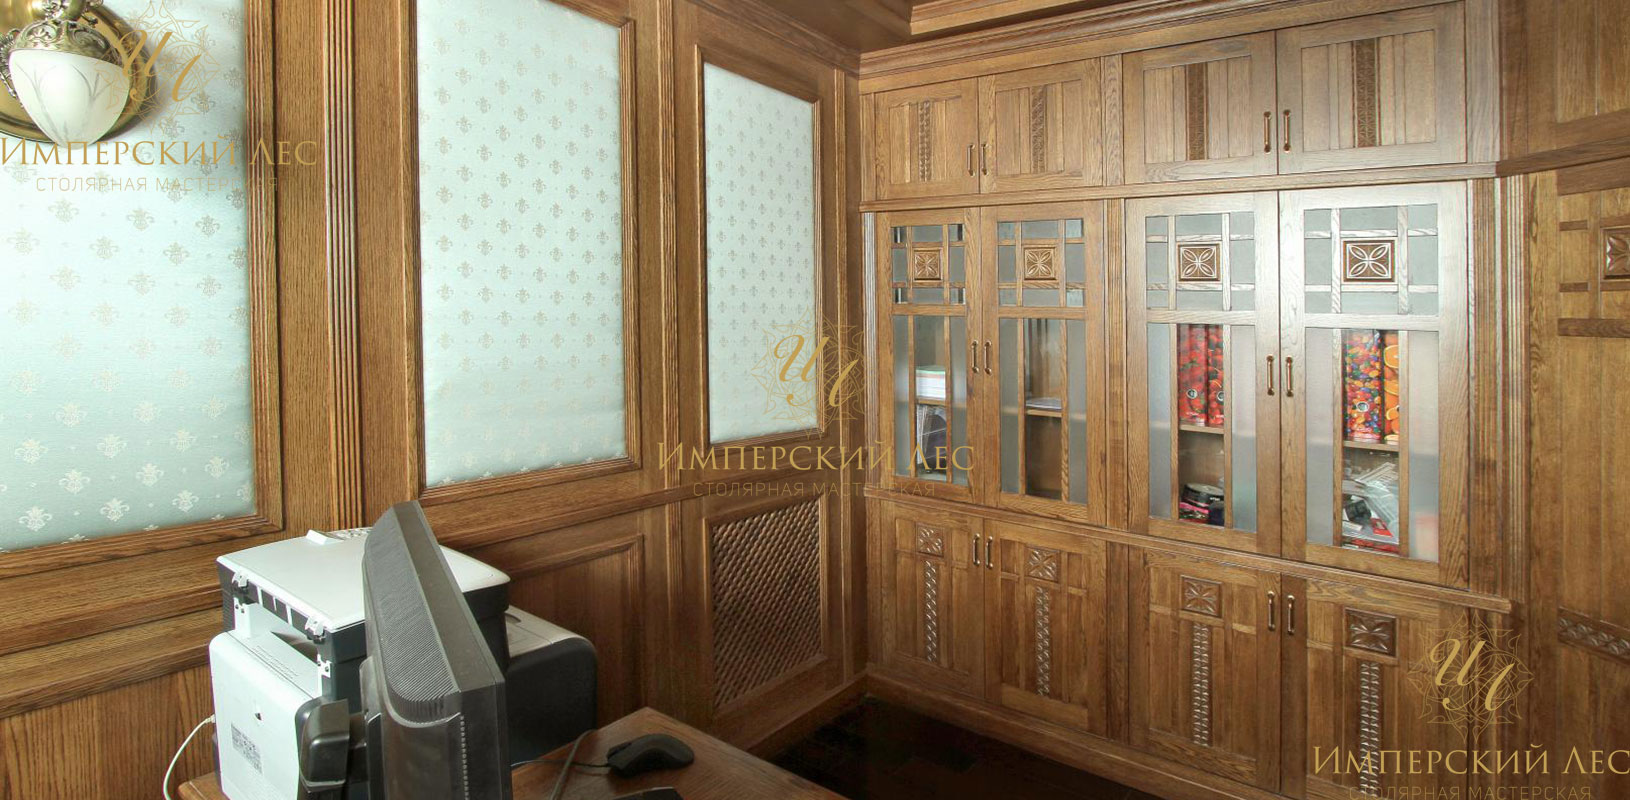 Домашний кабинет руководителя из массива европейского дуба с библиотекой